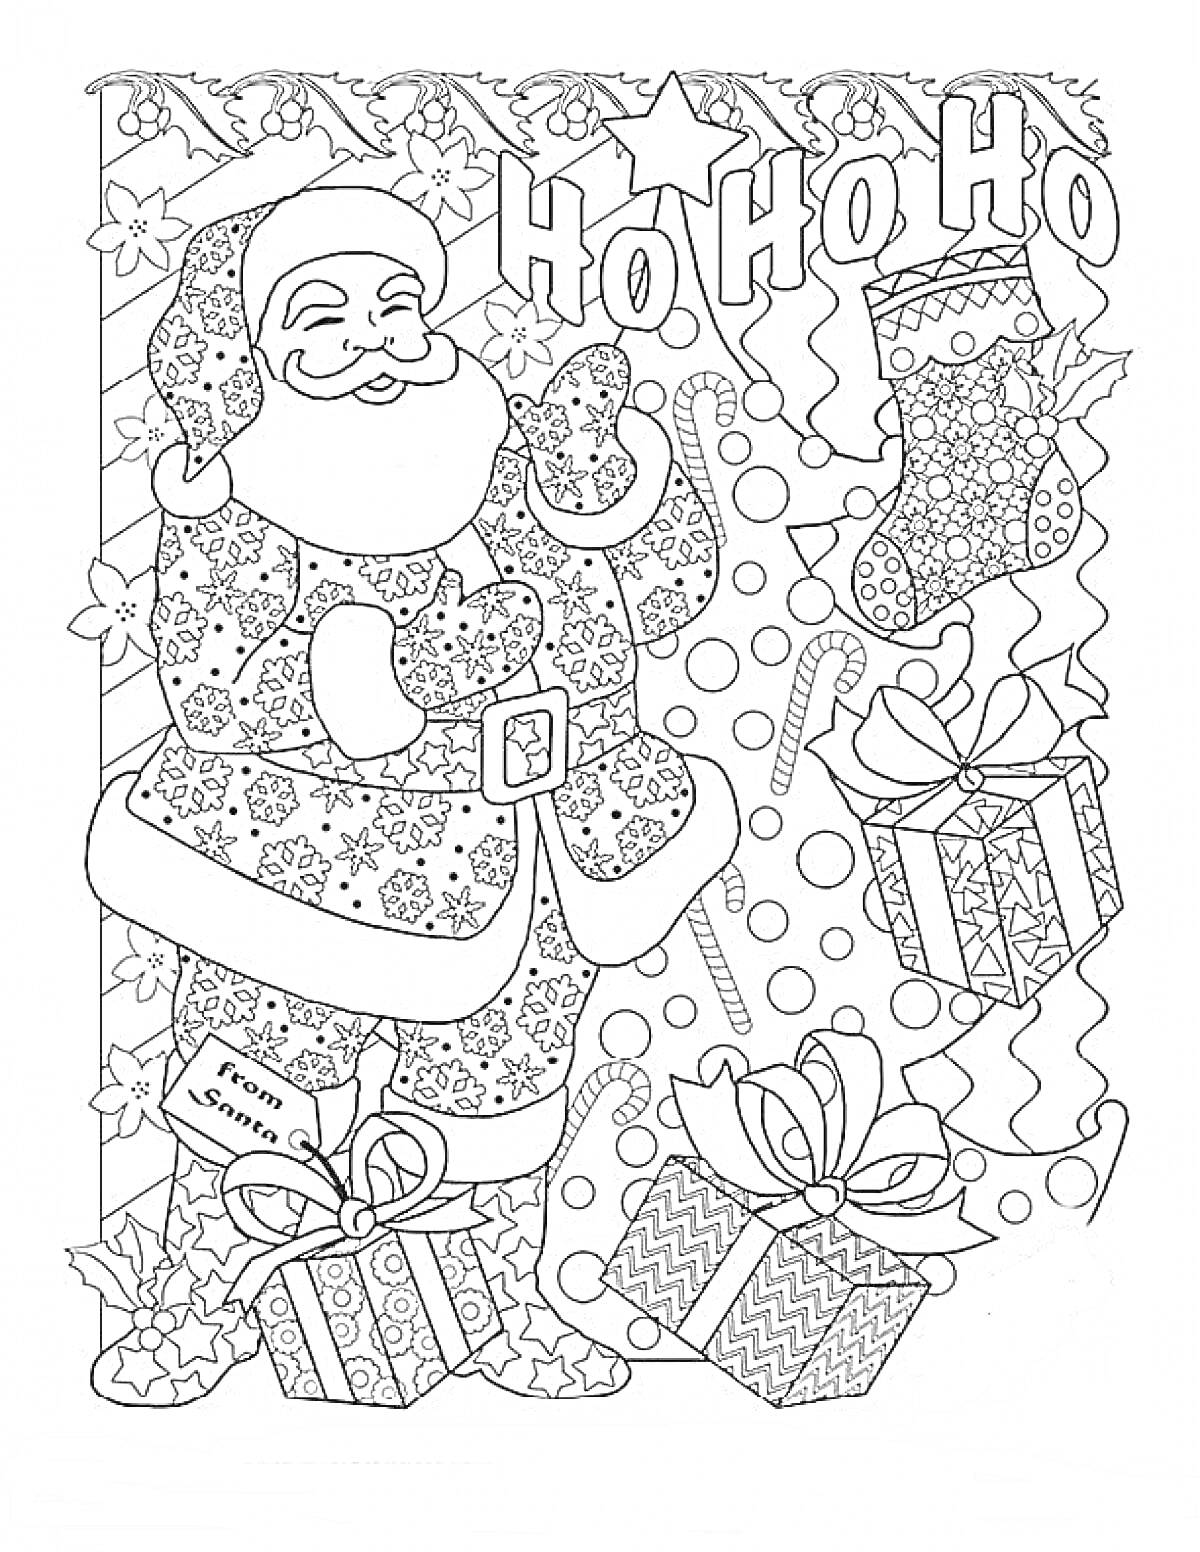 Раскраска Санта Клаус, подарки, новогодний чулок, конфеты трость, надпись Ho Ho Ho, снежинки и звезды, коробки с подарками